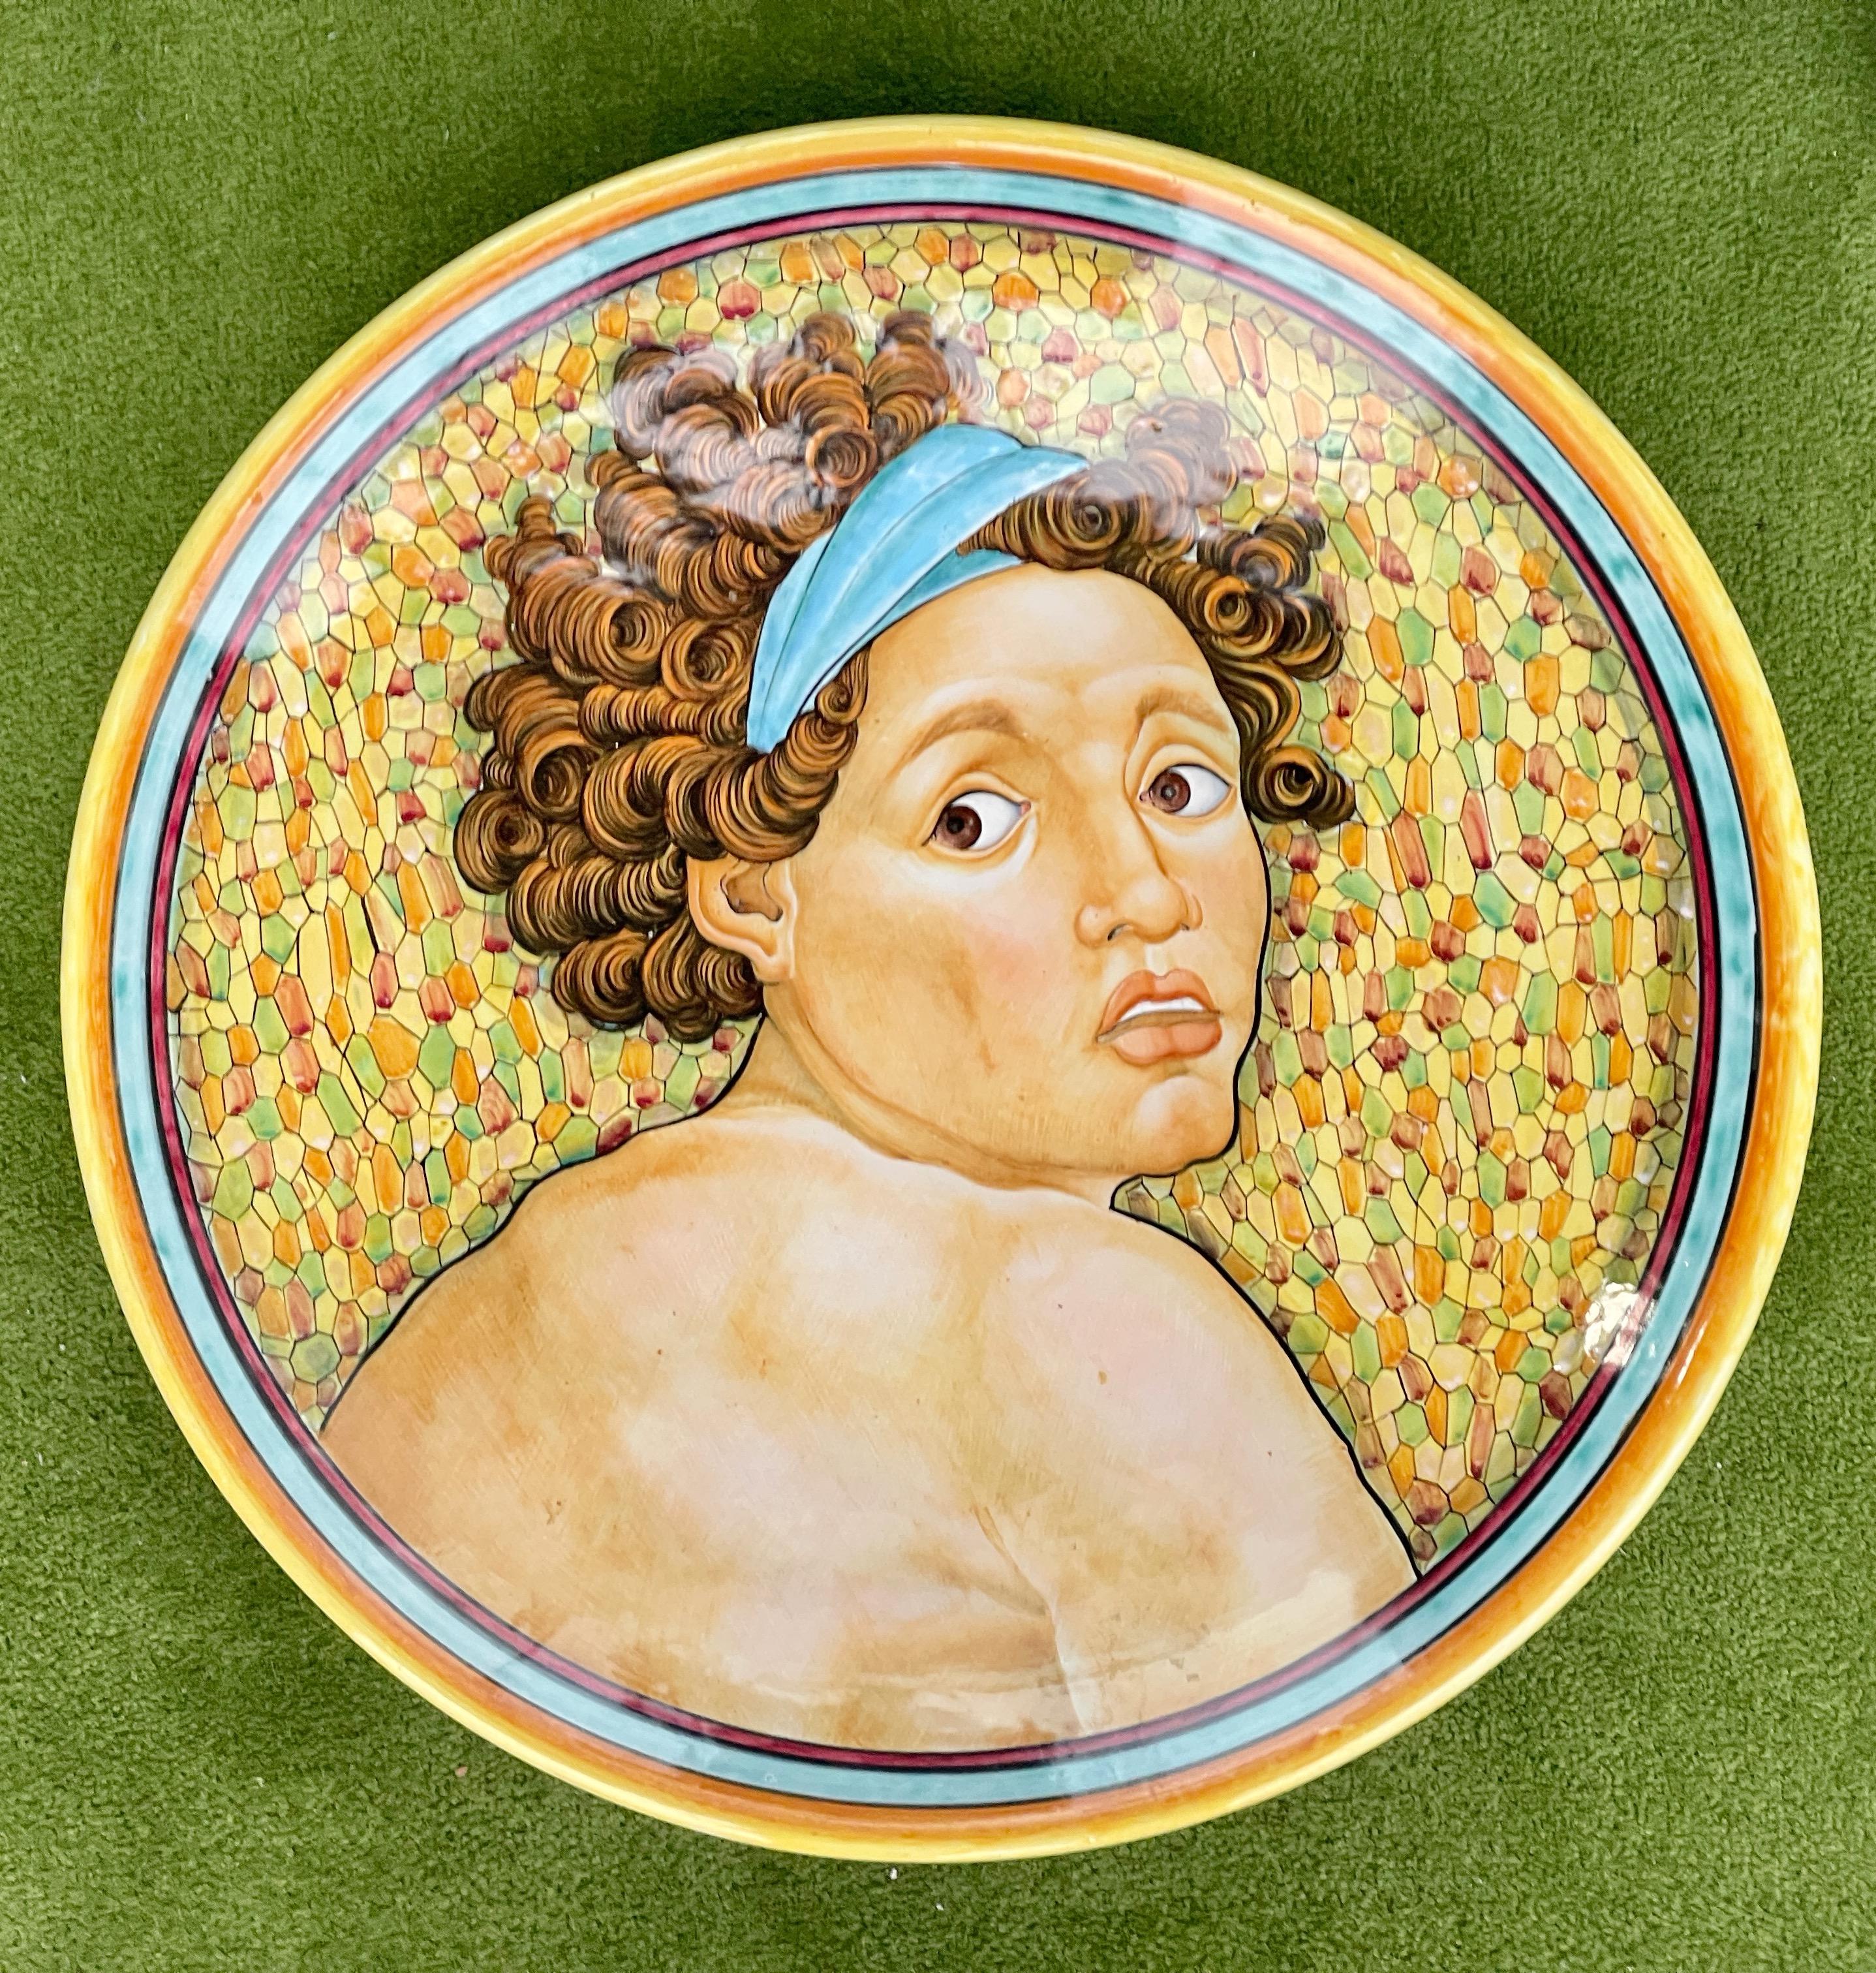 Chargeur en majolique de Deruta provenant de l'atelier de Serafino Volpi, peint à la main avec la tête aux grands yeux et aux cheveux bouclés d'un personnage 